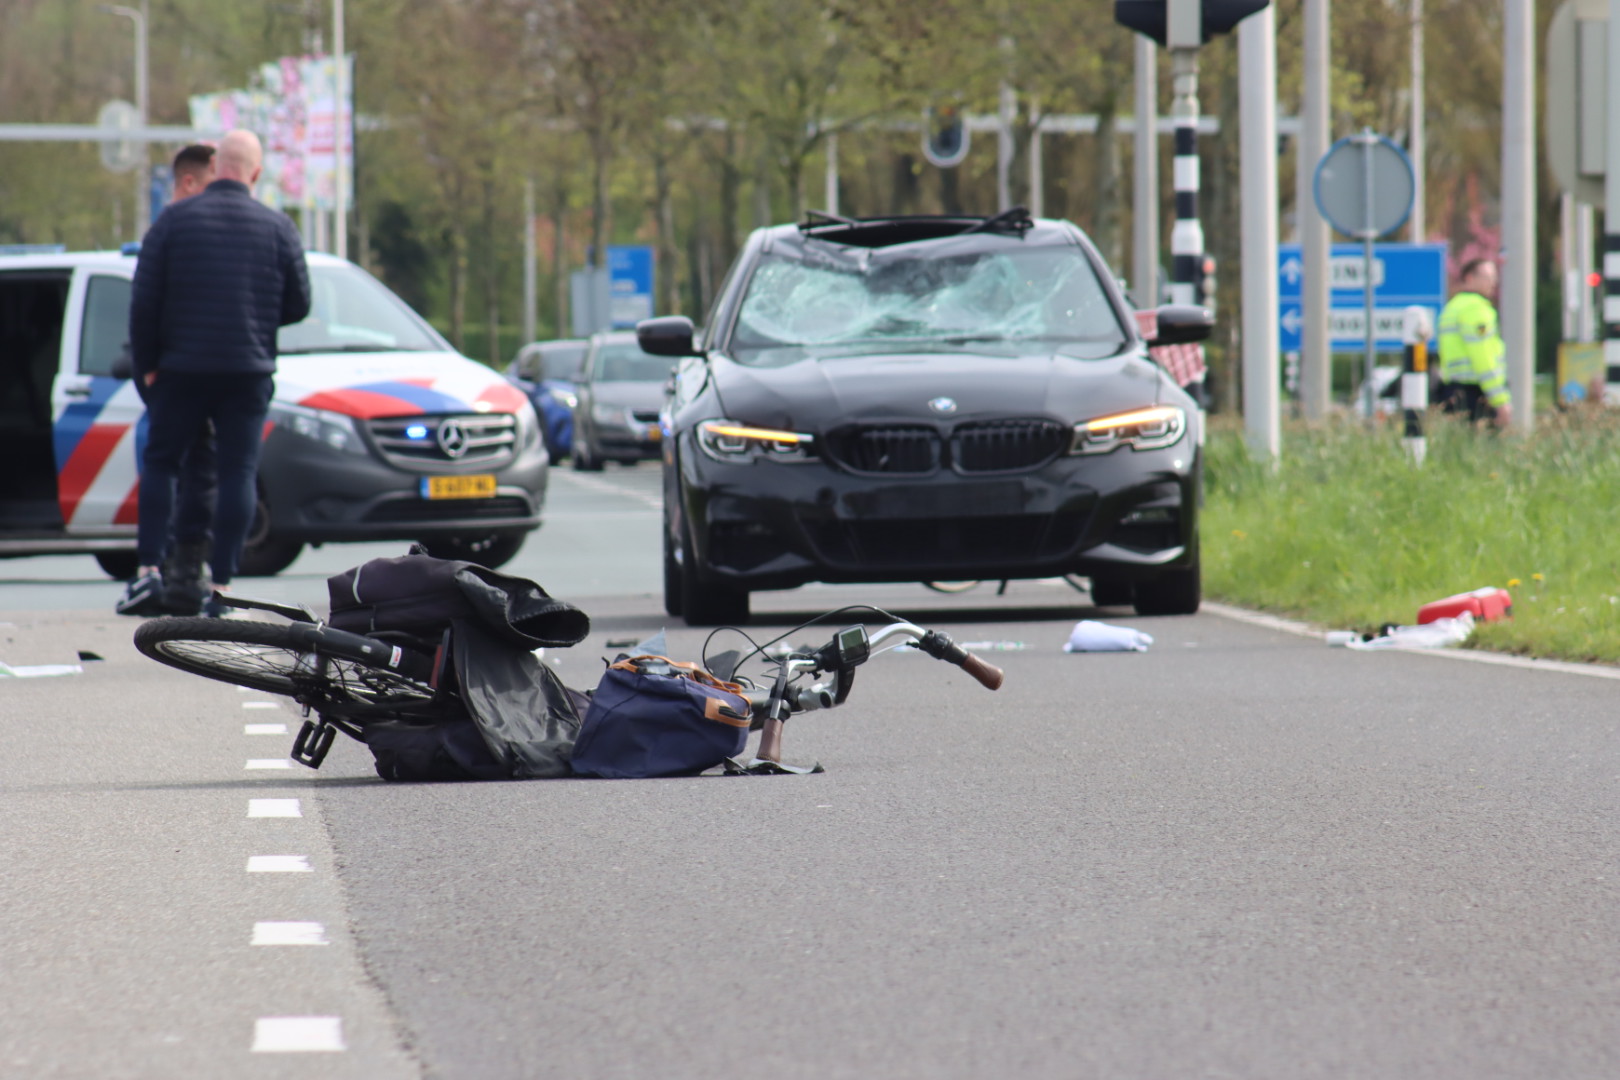 Ernstig ongeval met fietser op Groene Kruisweg